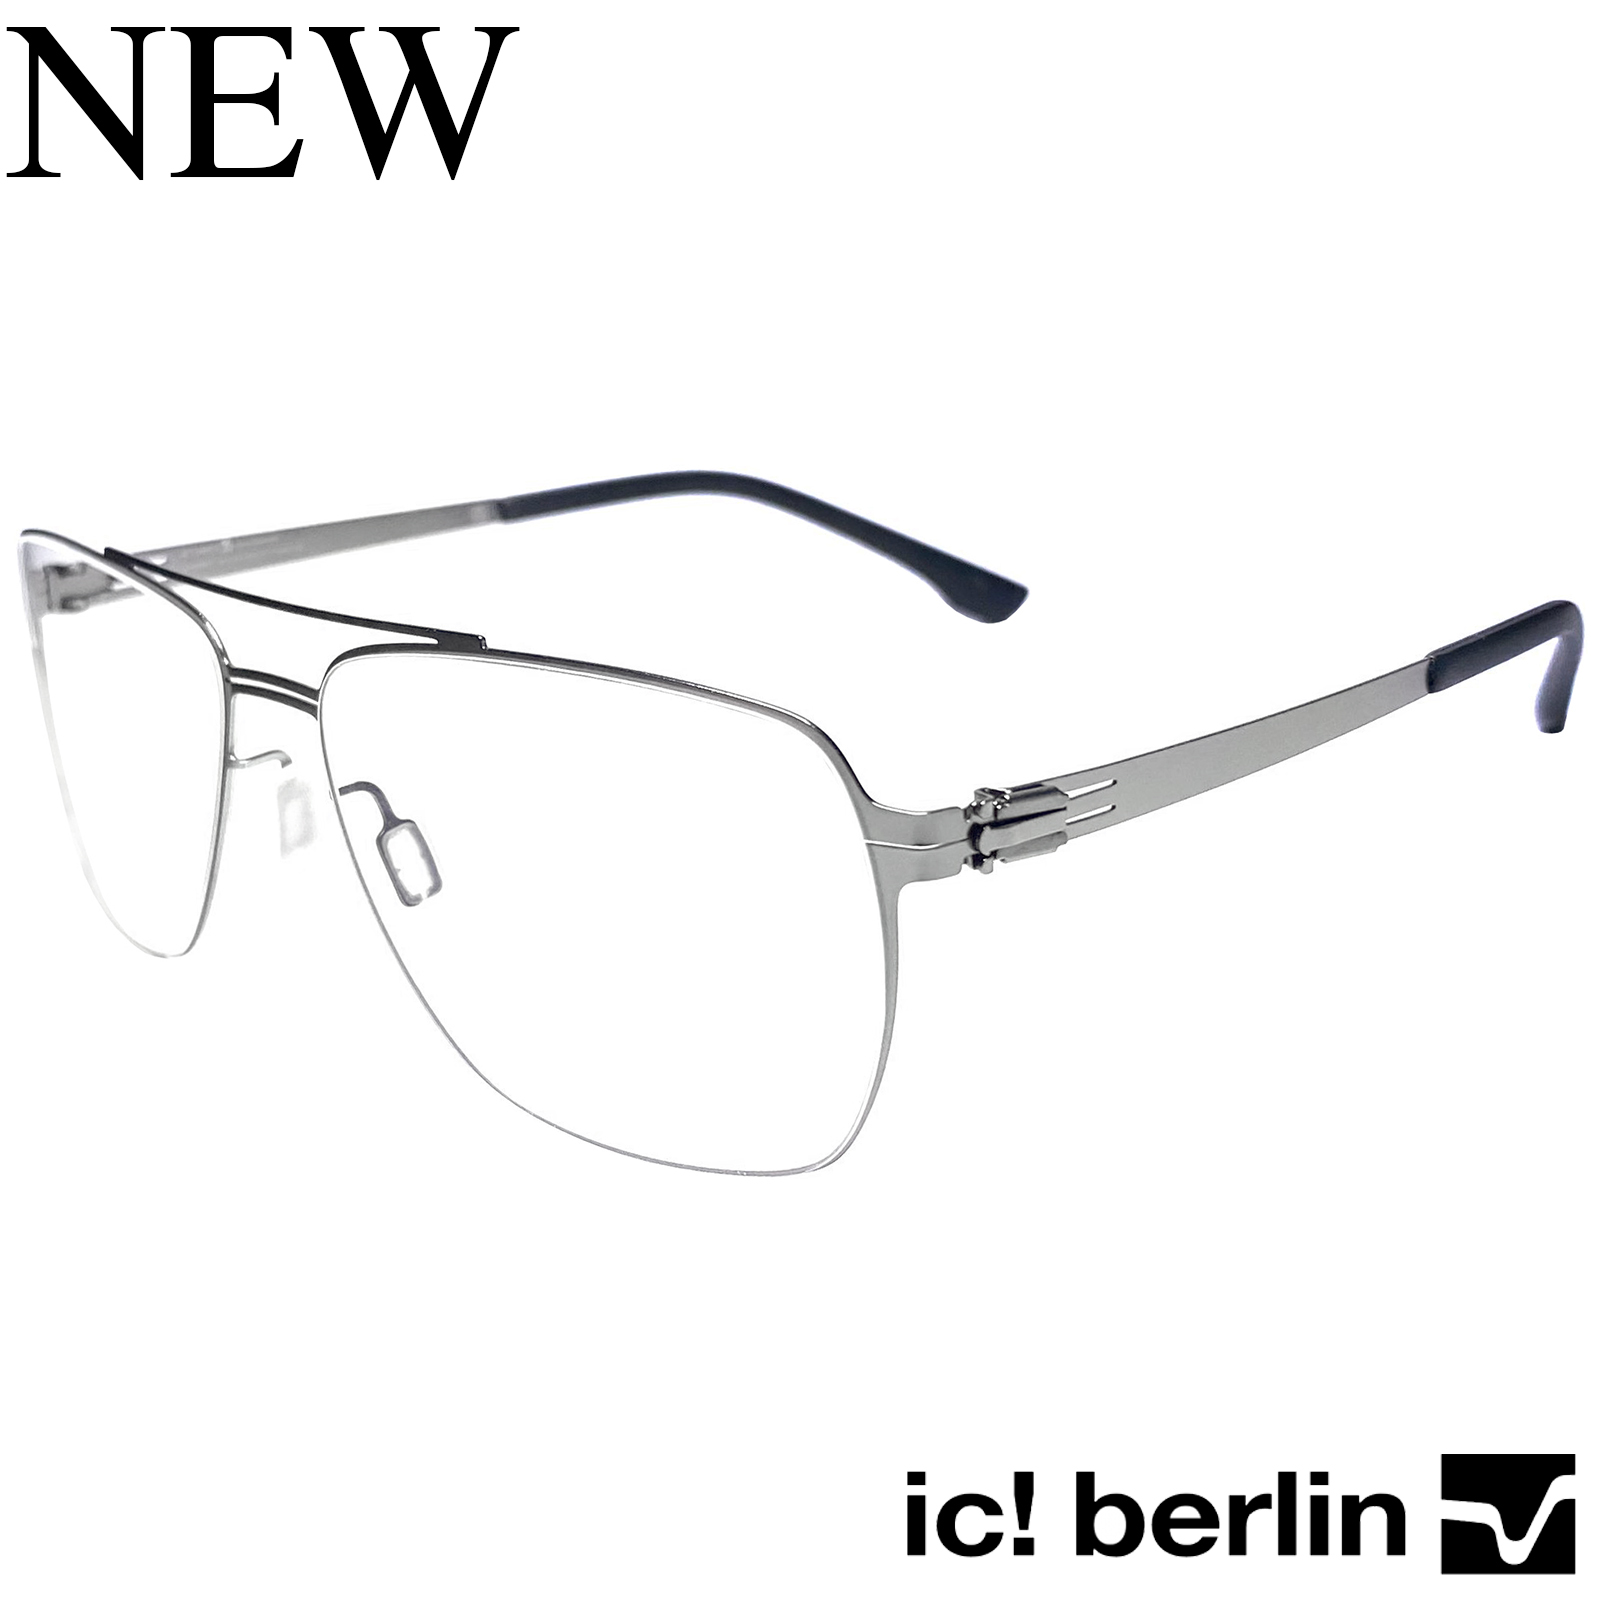 กรอบแว่นตา สำหรับตัดเลนส์ แว่นตาชาย หญิง Fashion รุ่น IC-Fran M 55 กรอบเต็ม ทรงรี ขาไม่ใช้น็อต ถอดได้ วัสดุ Stainless Steel น้ำหนักเบา